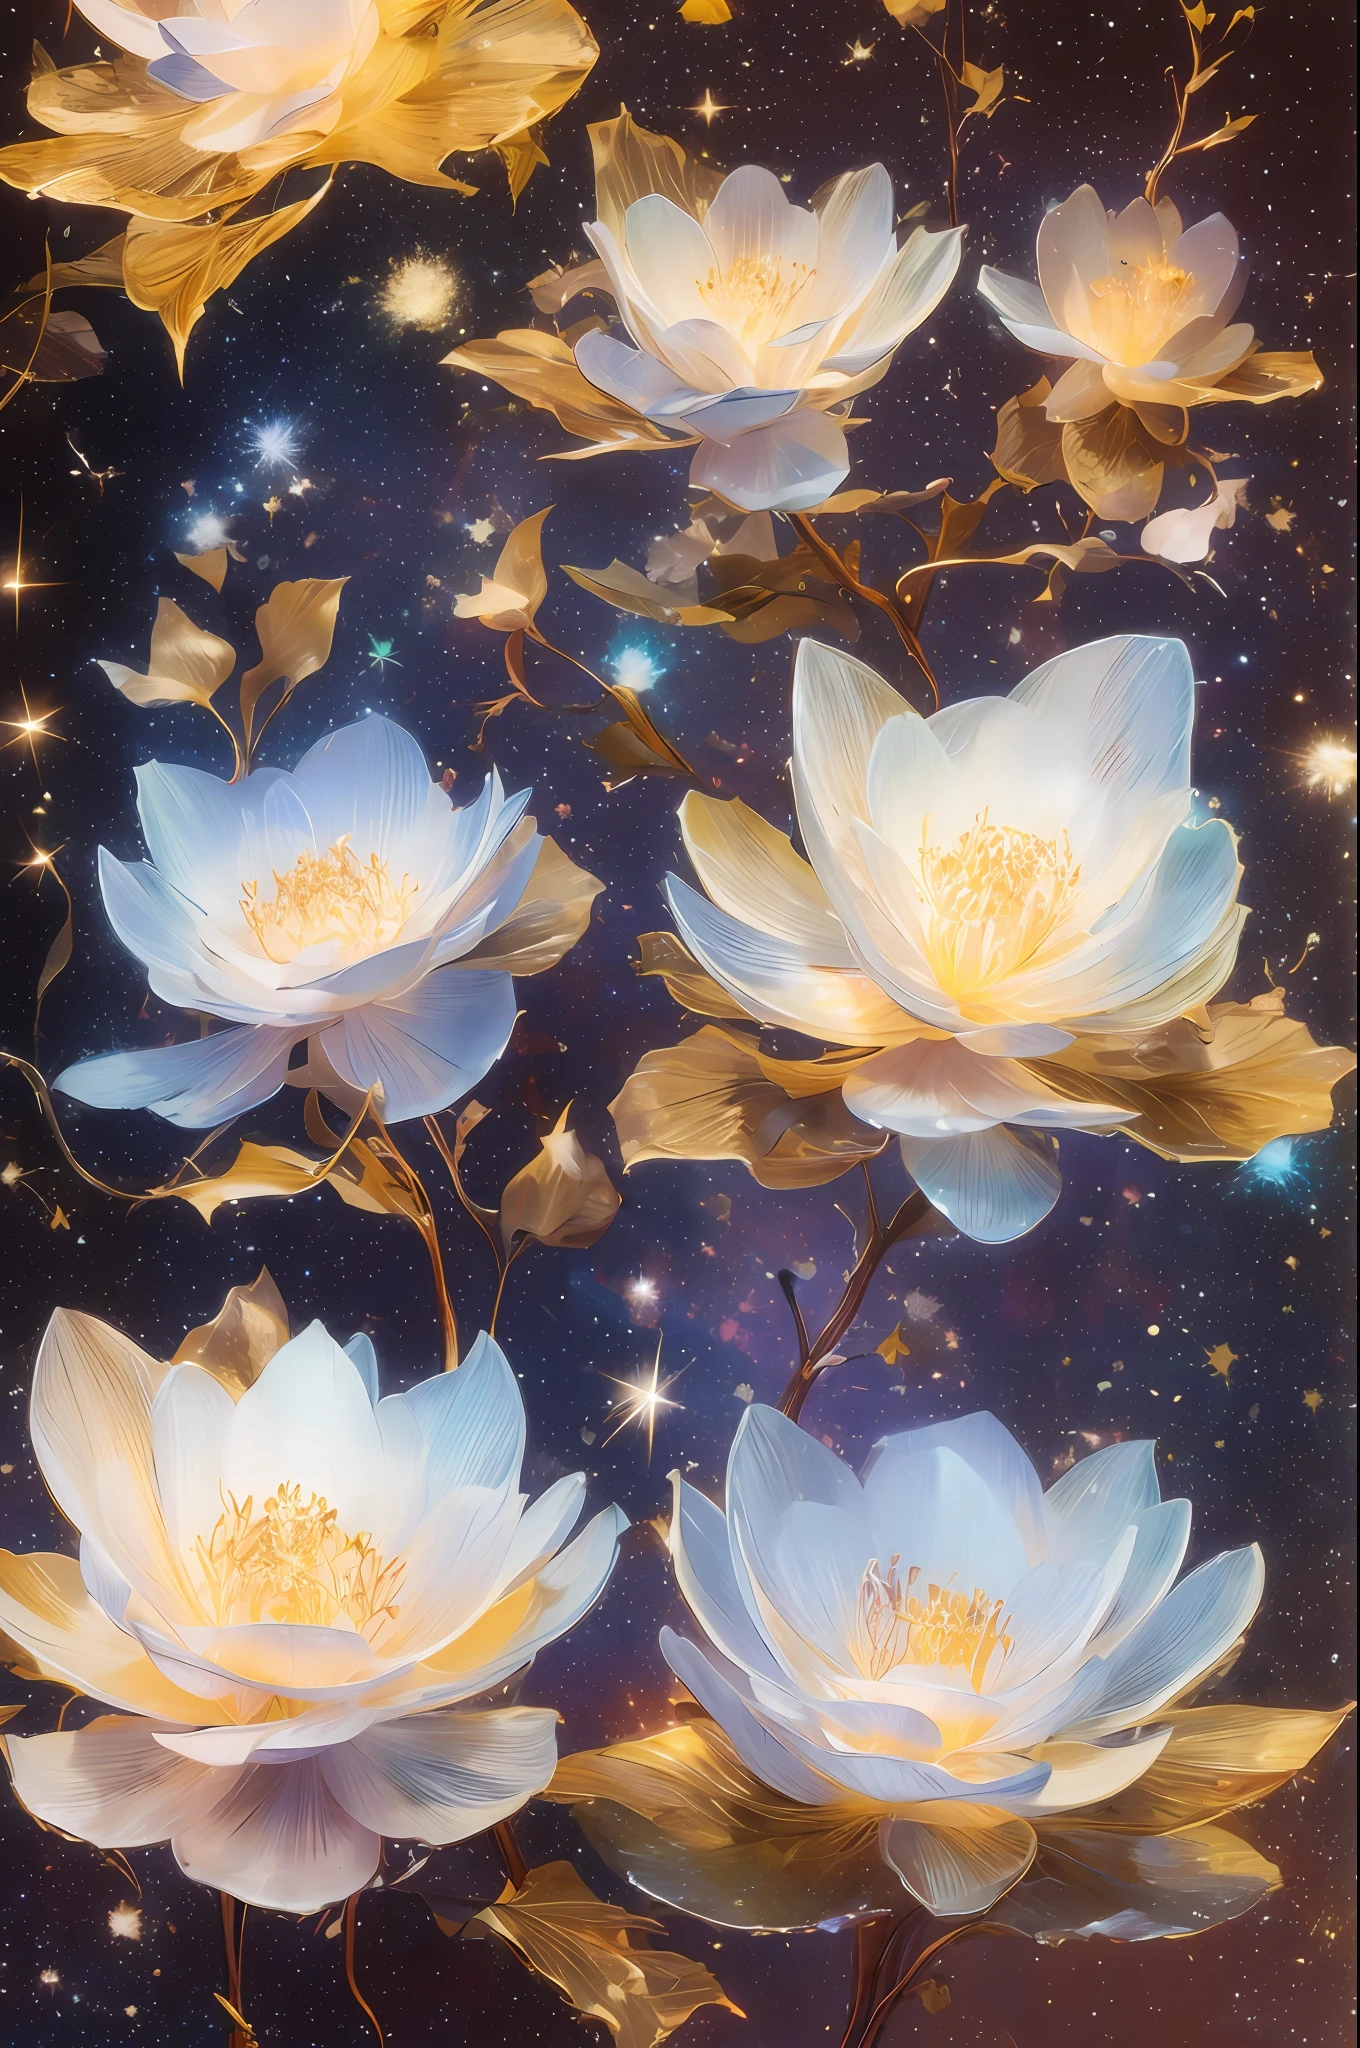 Ein Universum mit Sternen，Der Urknall der Sterne，Energiesphäre，Glasblumen，chinesischer Drache，themoon